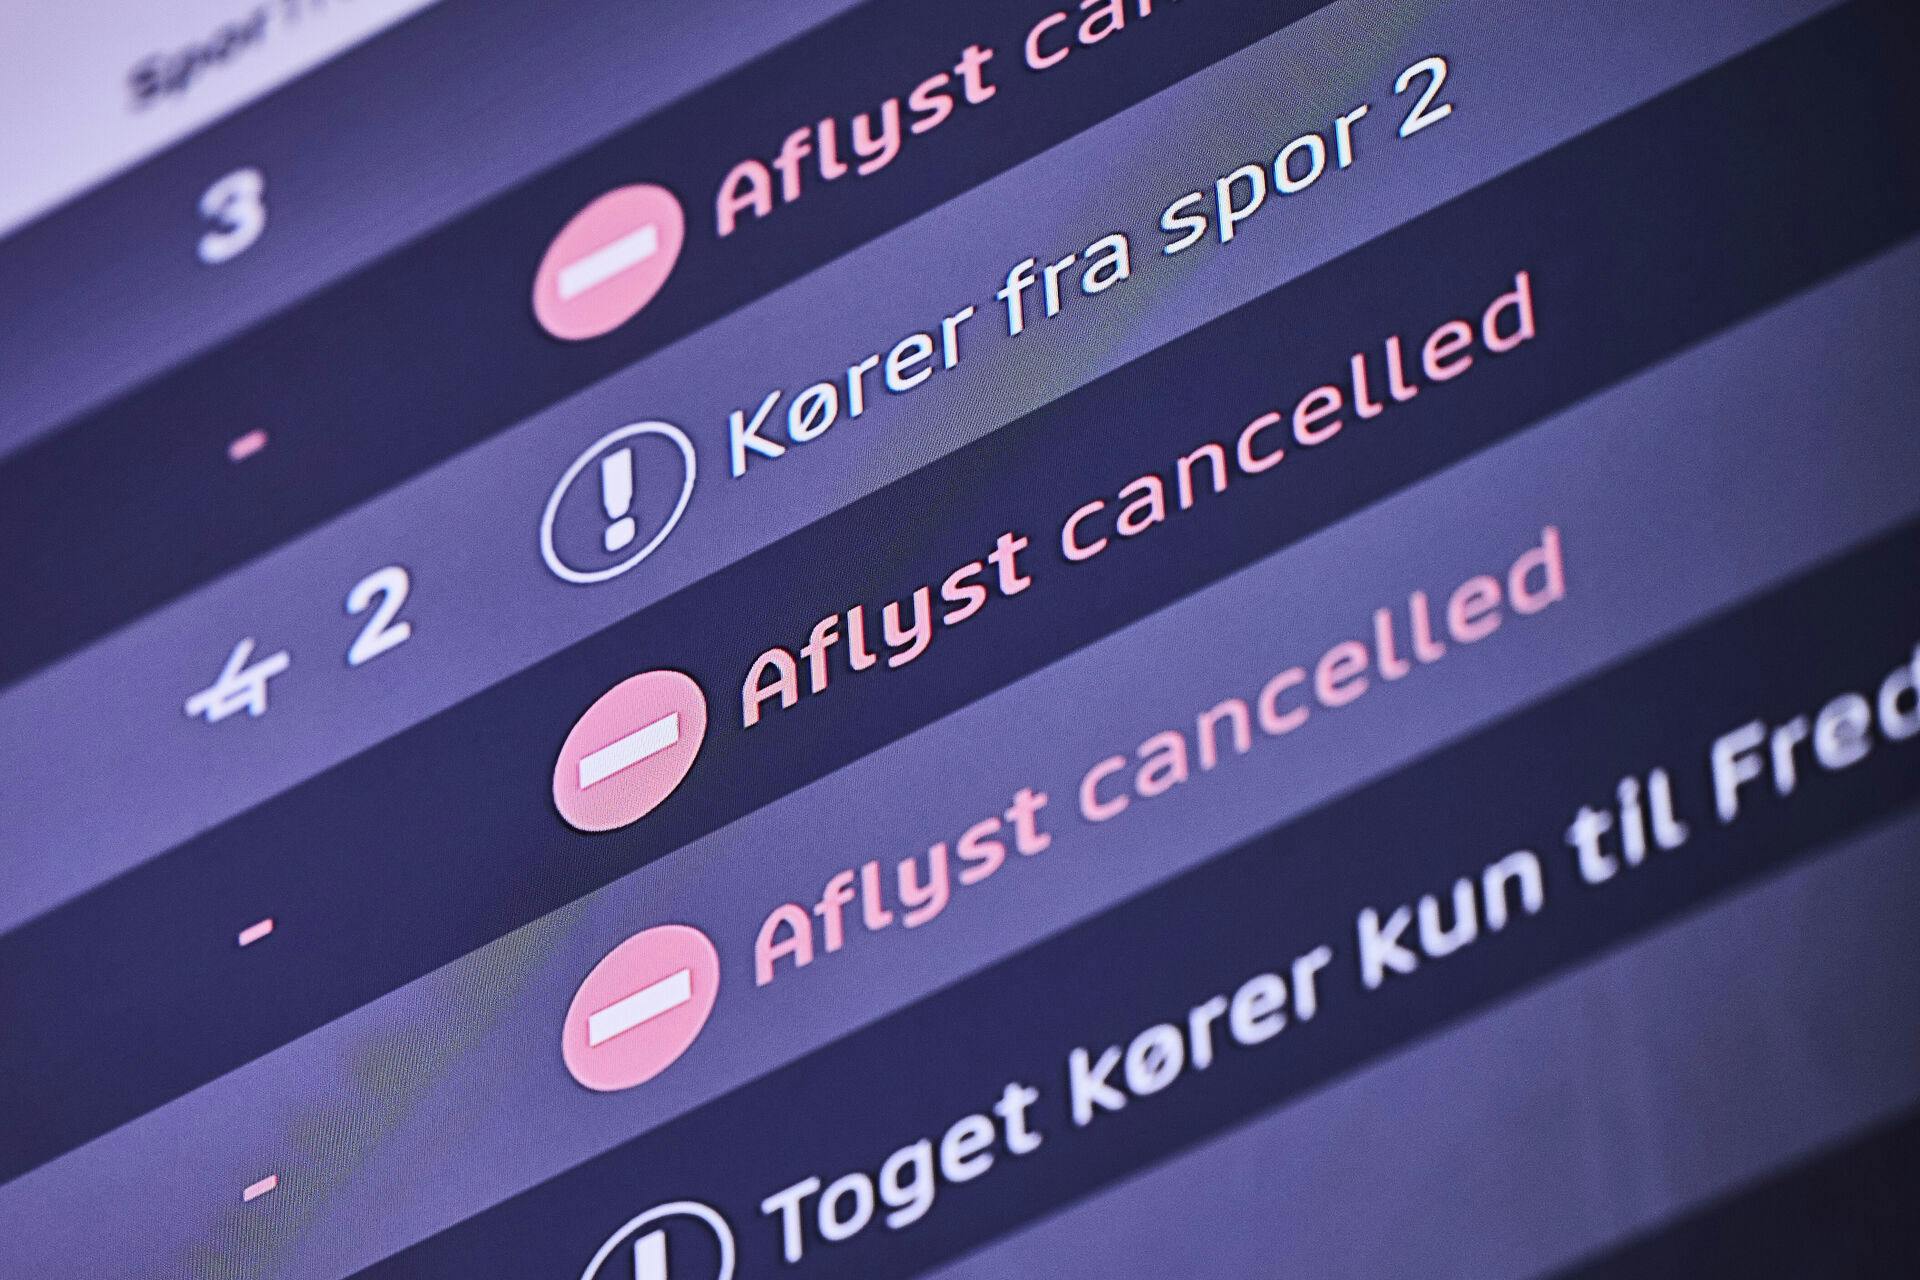 Flere tog mellem Fredericia og Aarhus H er mandag aflyst på grund af akut sporarbejde efter et dæmningsskred.